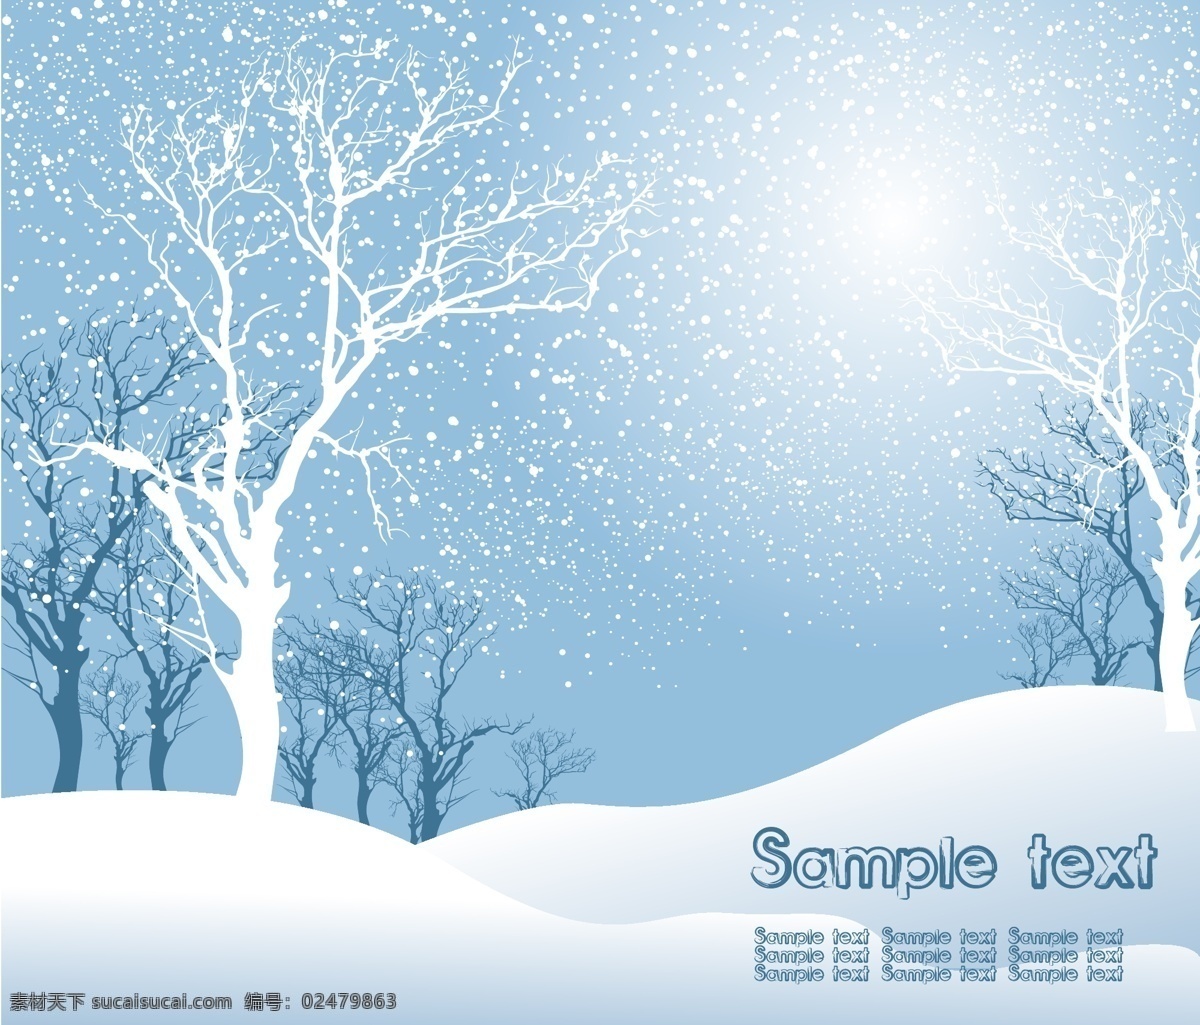 圣诞节 雪景 场景 雪景矢量 雪花 圣诞场景 蓝色 郊外 树林 树木 冬天 冬季 大雪 雪地 山坡 树木剪影 雪景设计 卡通动漫 动漫动画 风景漫画